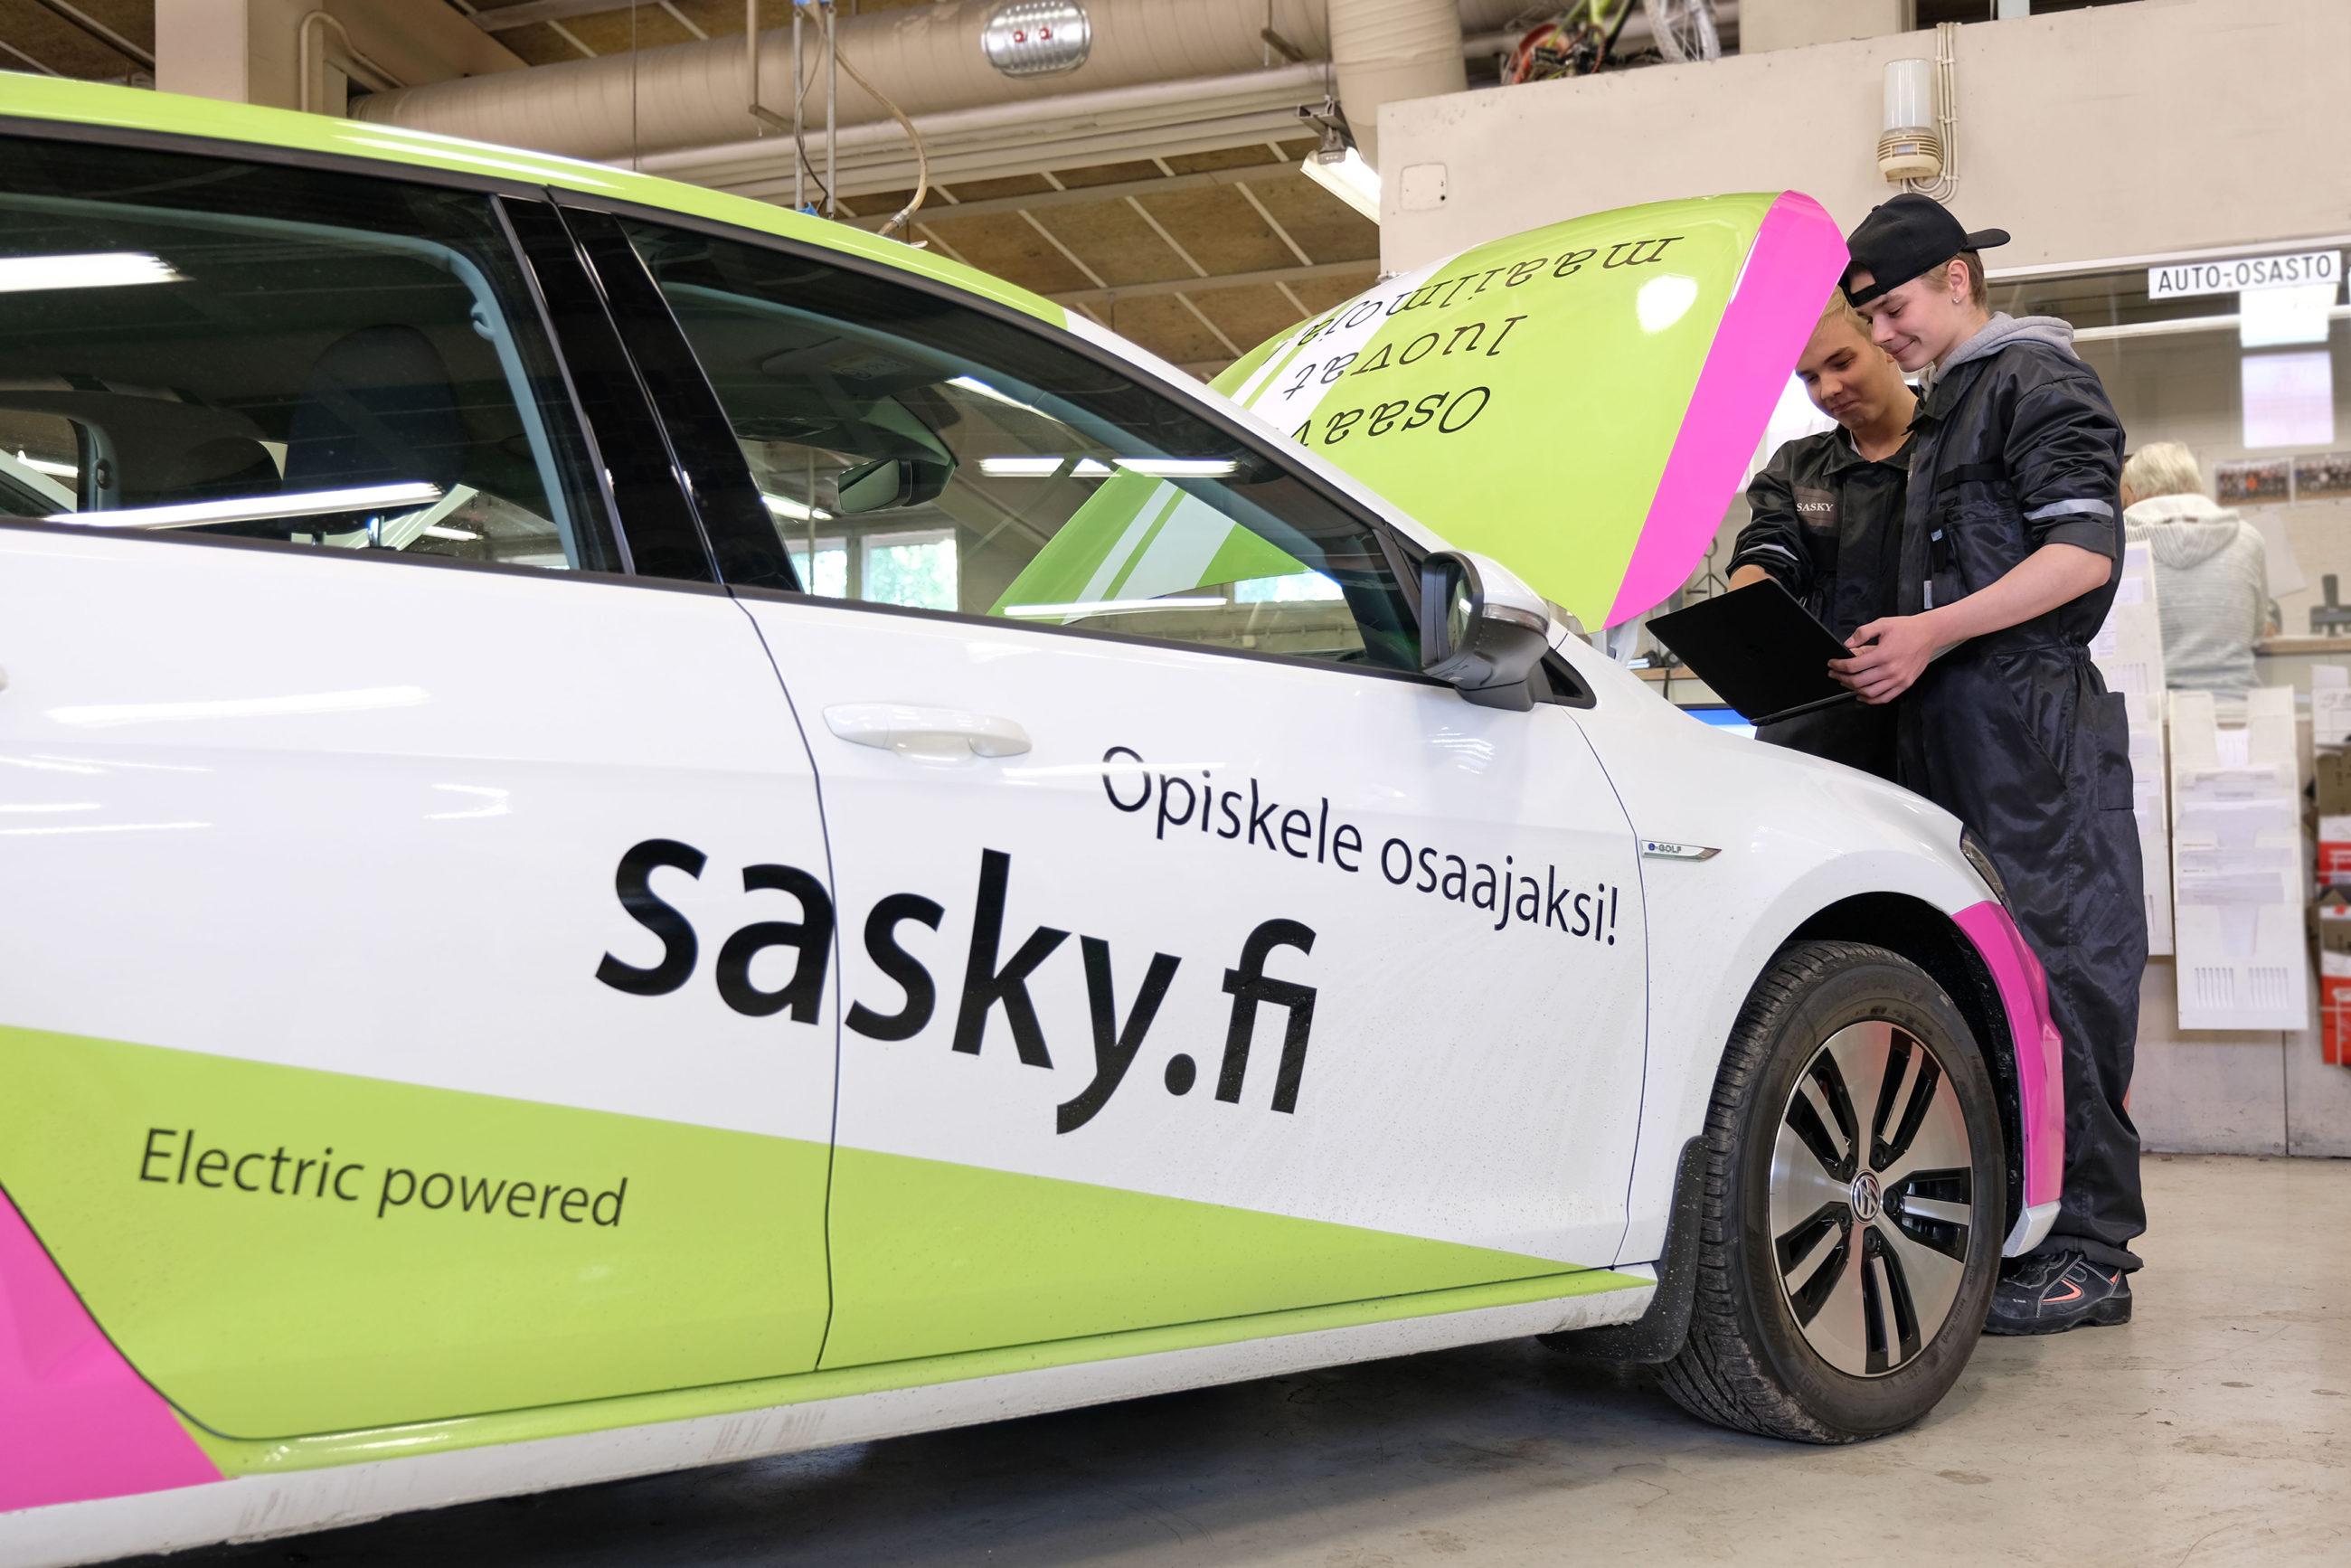 Kaksi henkilöä tutkii tietokone kädessään autoa, jonka konepelli on nostettu ylös, valko-vihreä-pinkin auton kyljessä on tekstit opiskele osaajaksi, sasky.fi ja electric powered.